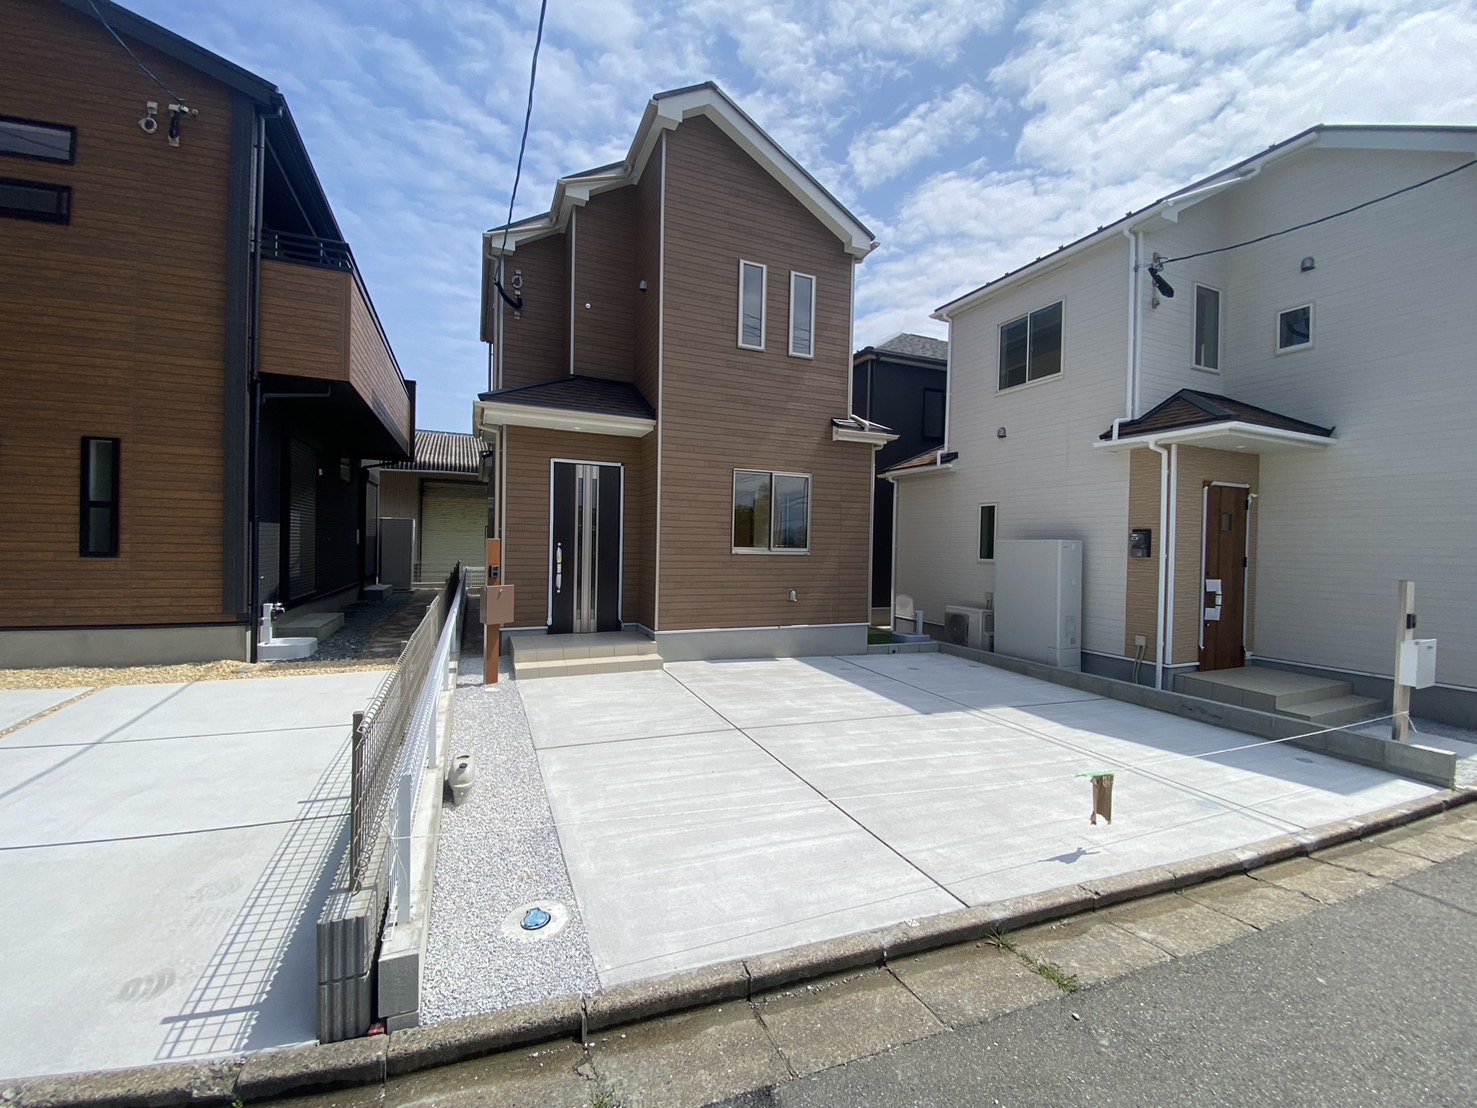 糸島市志摩師吉に新築住宅が誕生です！
気になる方は気軽にお問い合わせください♪
☆1号棟外観